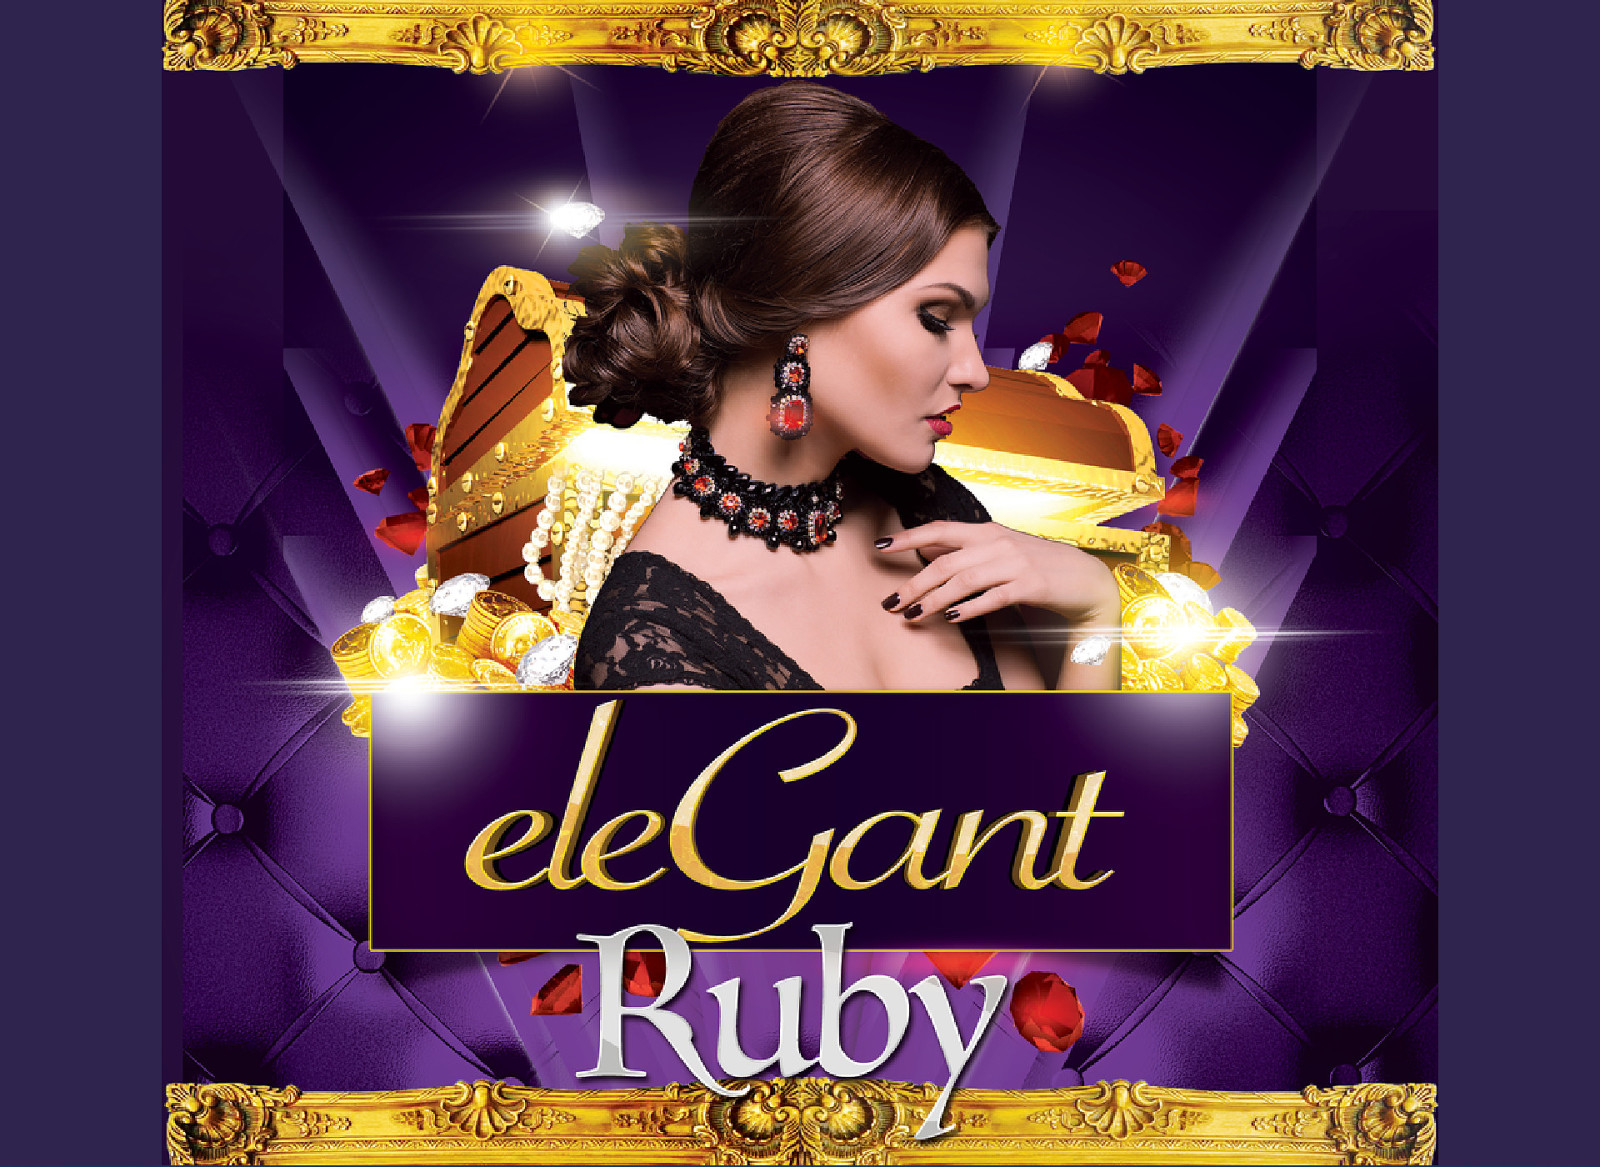 eleGant Ruby